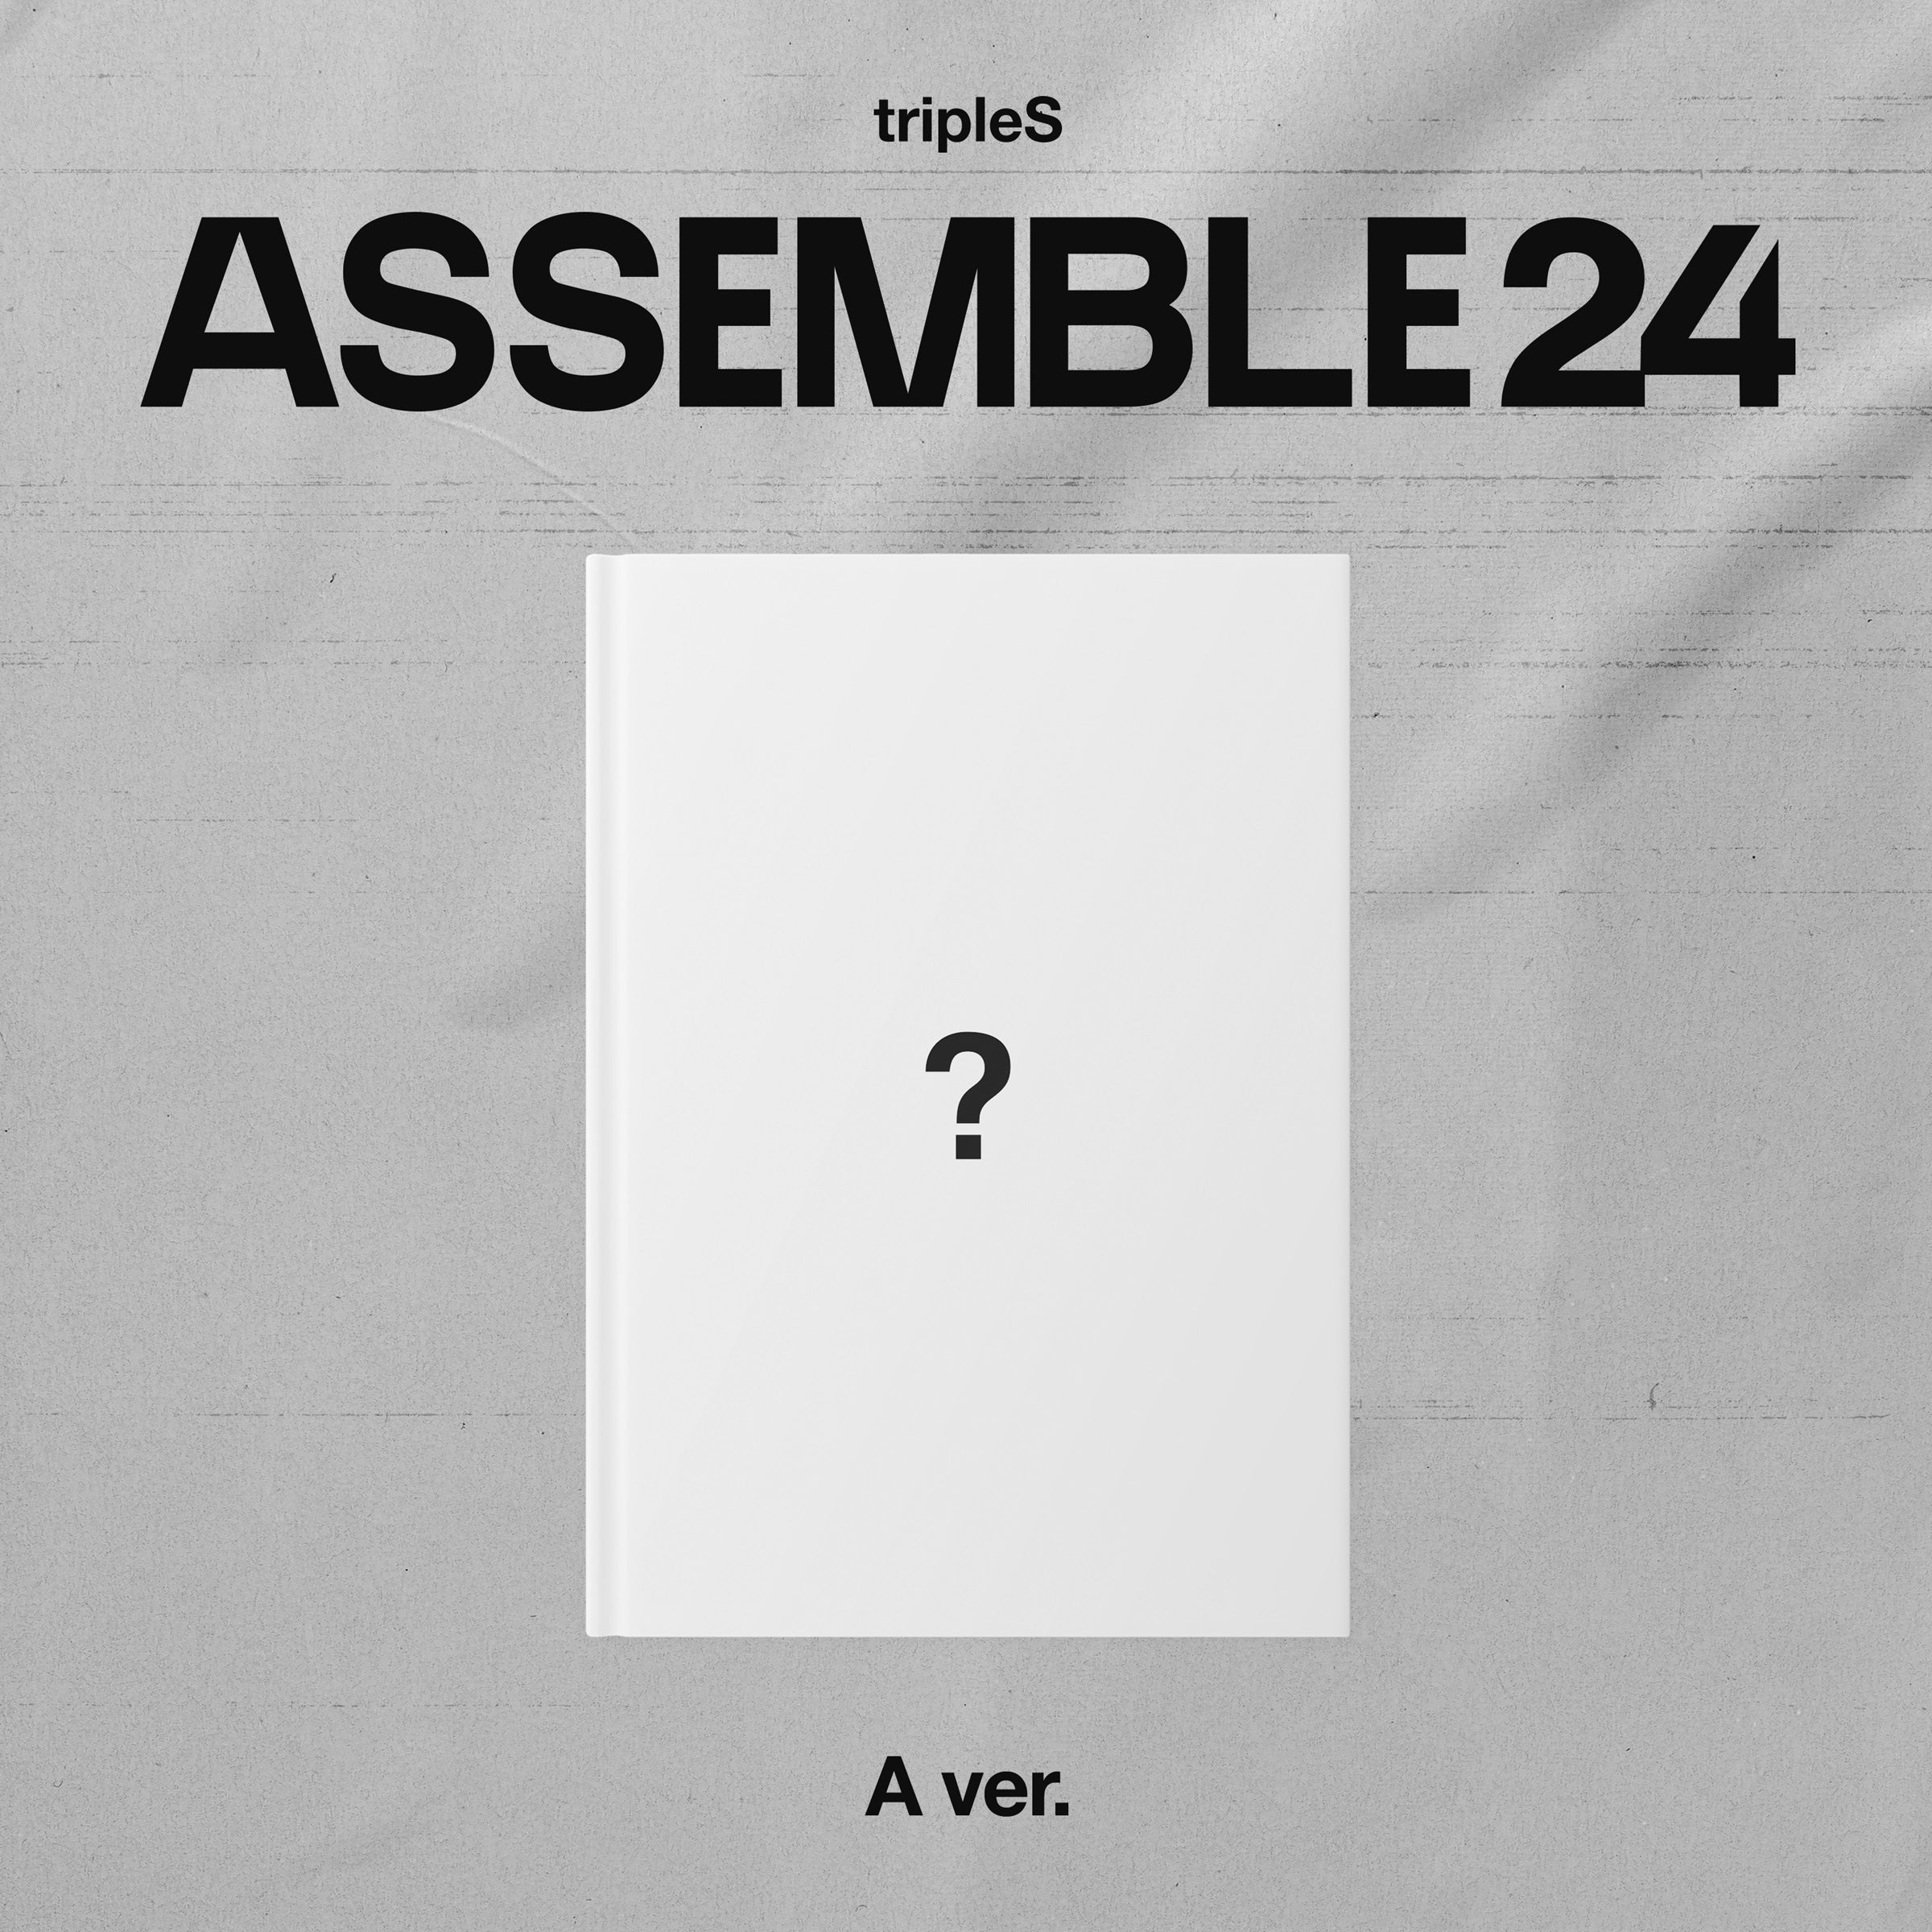 트리플에스 tripleS - 정규 ASSEMBLE24